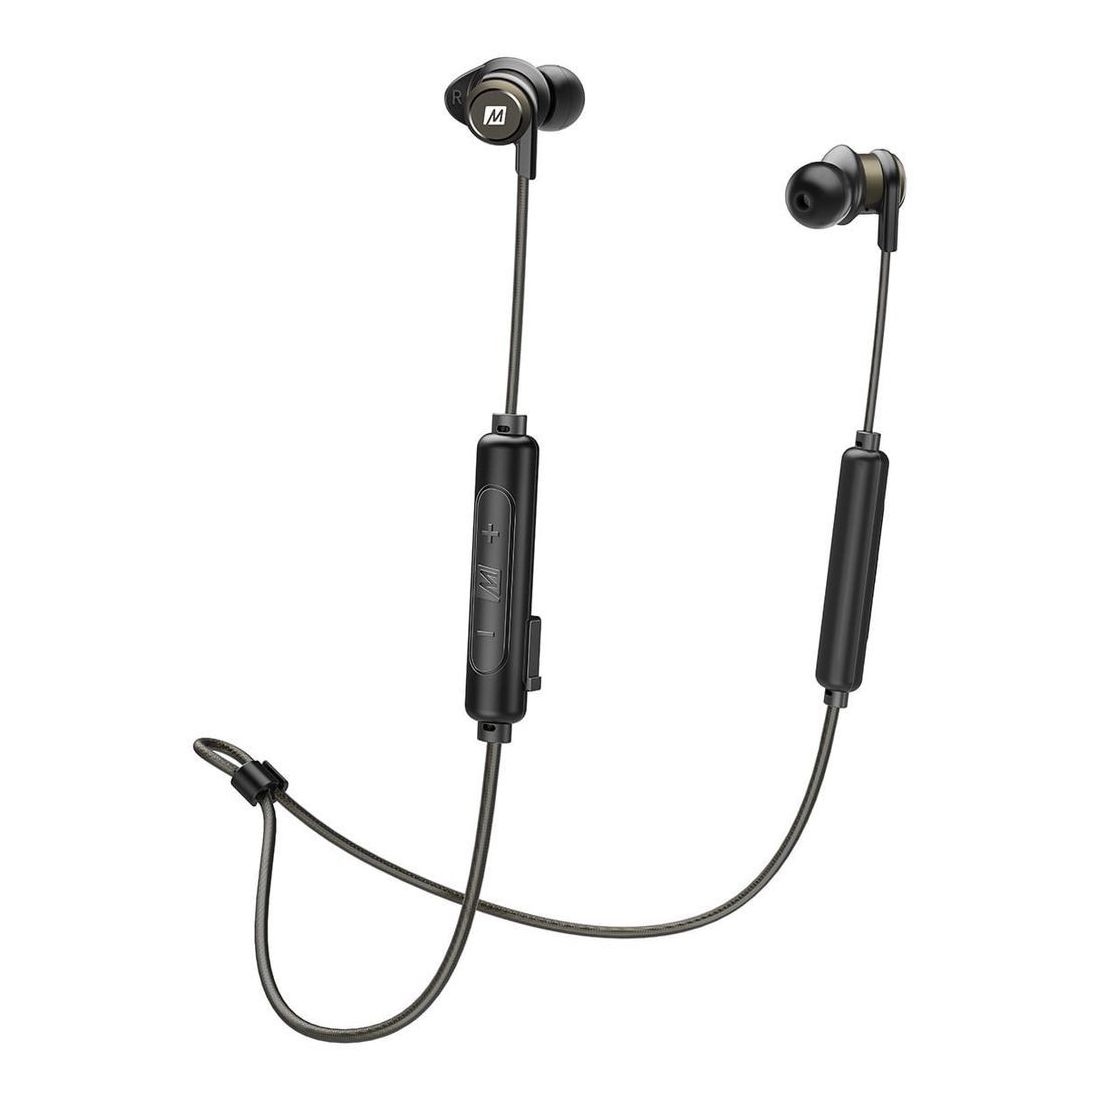 Mee Audio X5 Wireless In-Ear Stereo Headset Black